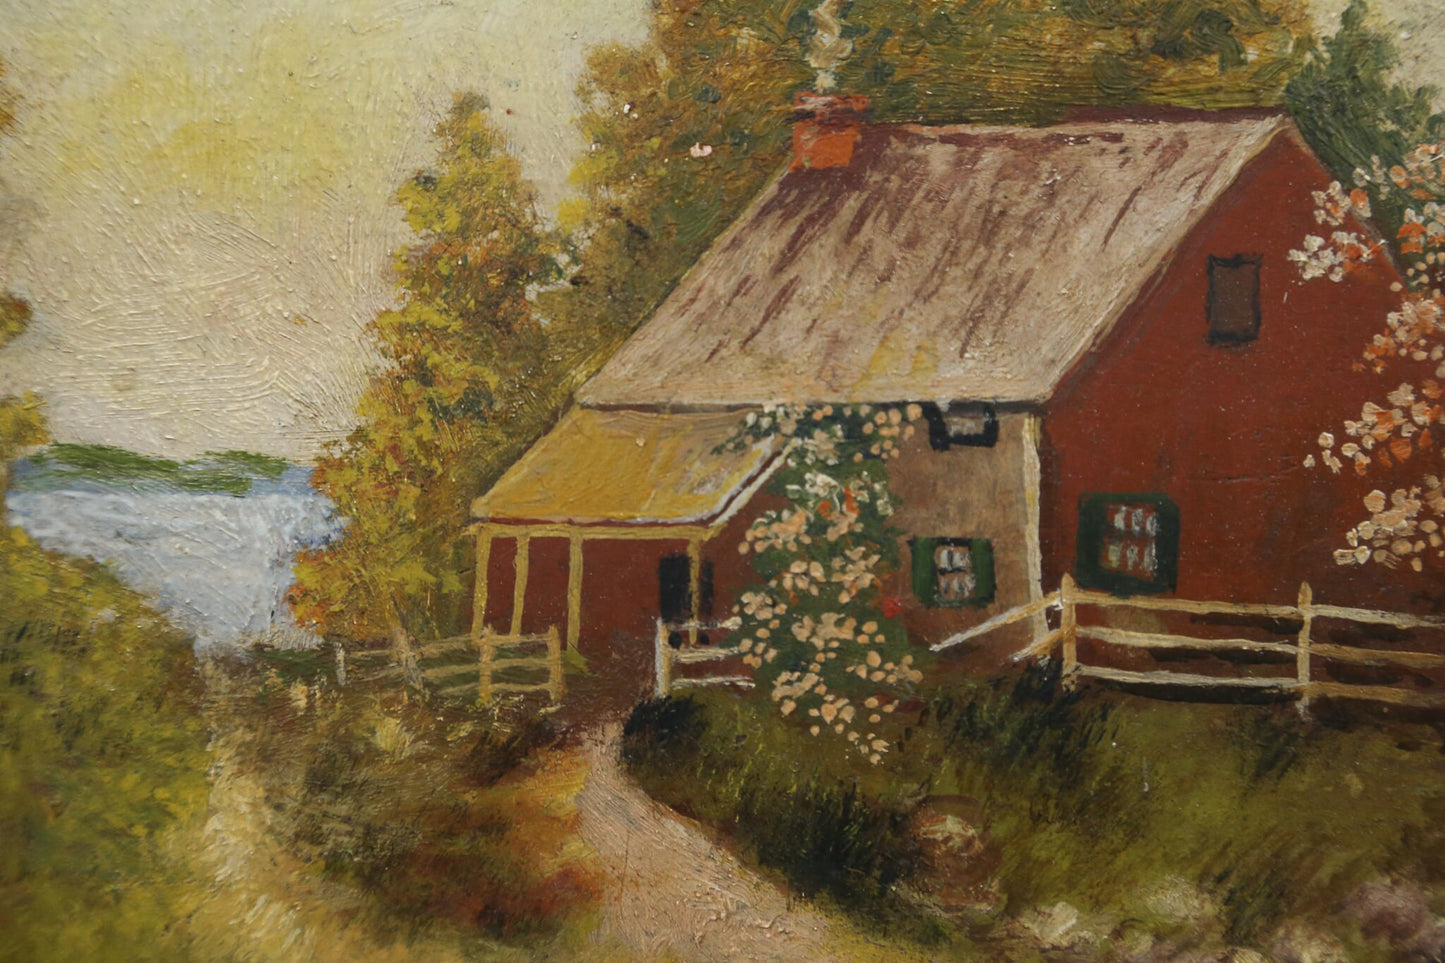 Painting Folk Art Naive Farmhouse Cottage Mountain Lake Flowers 1890s Period Frame